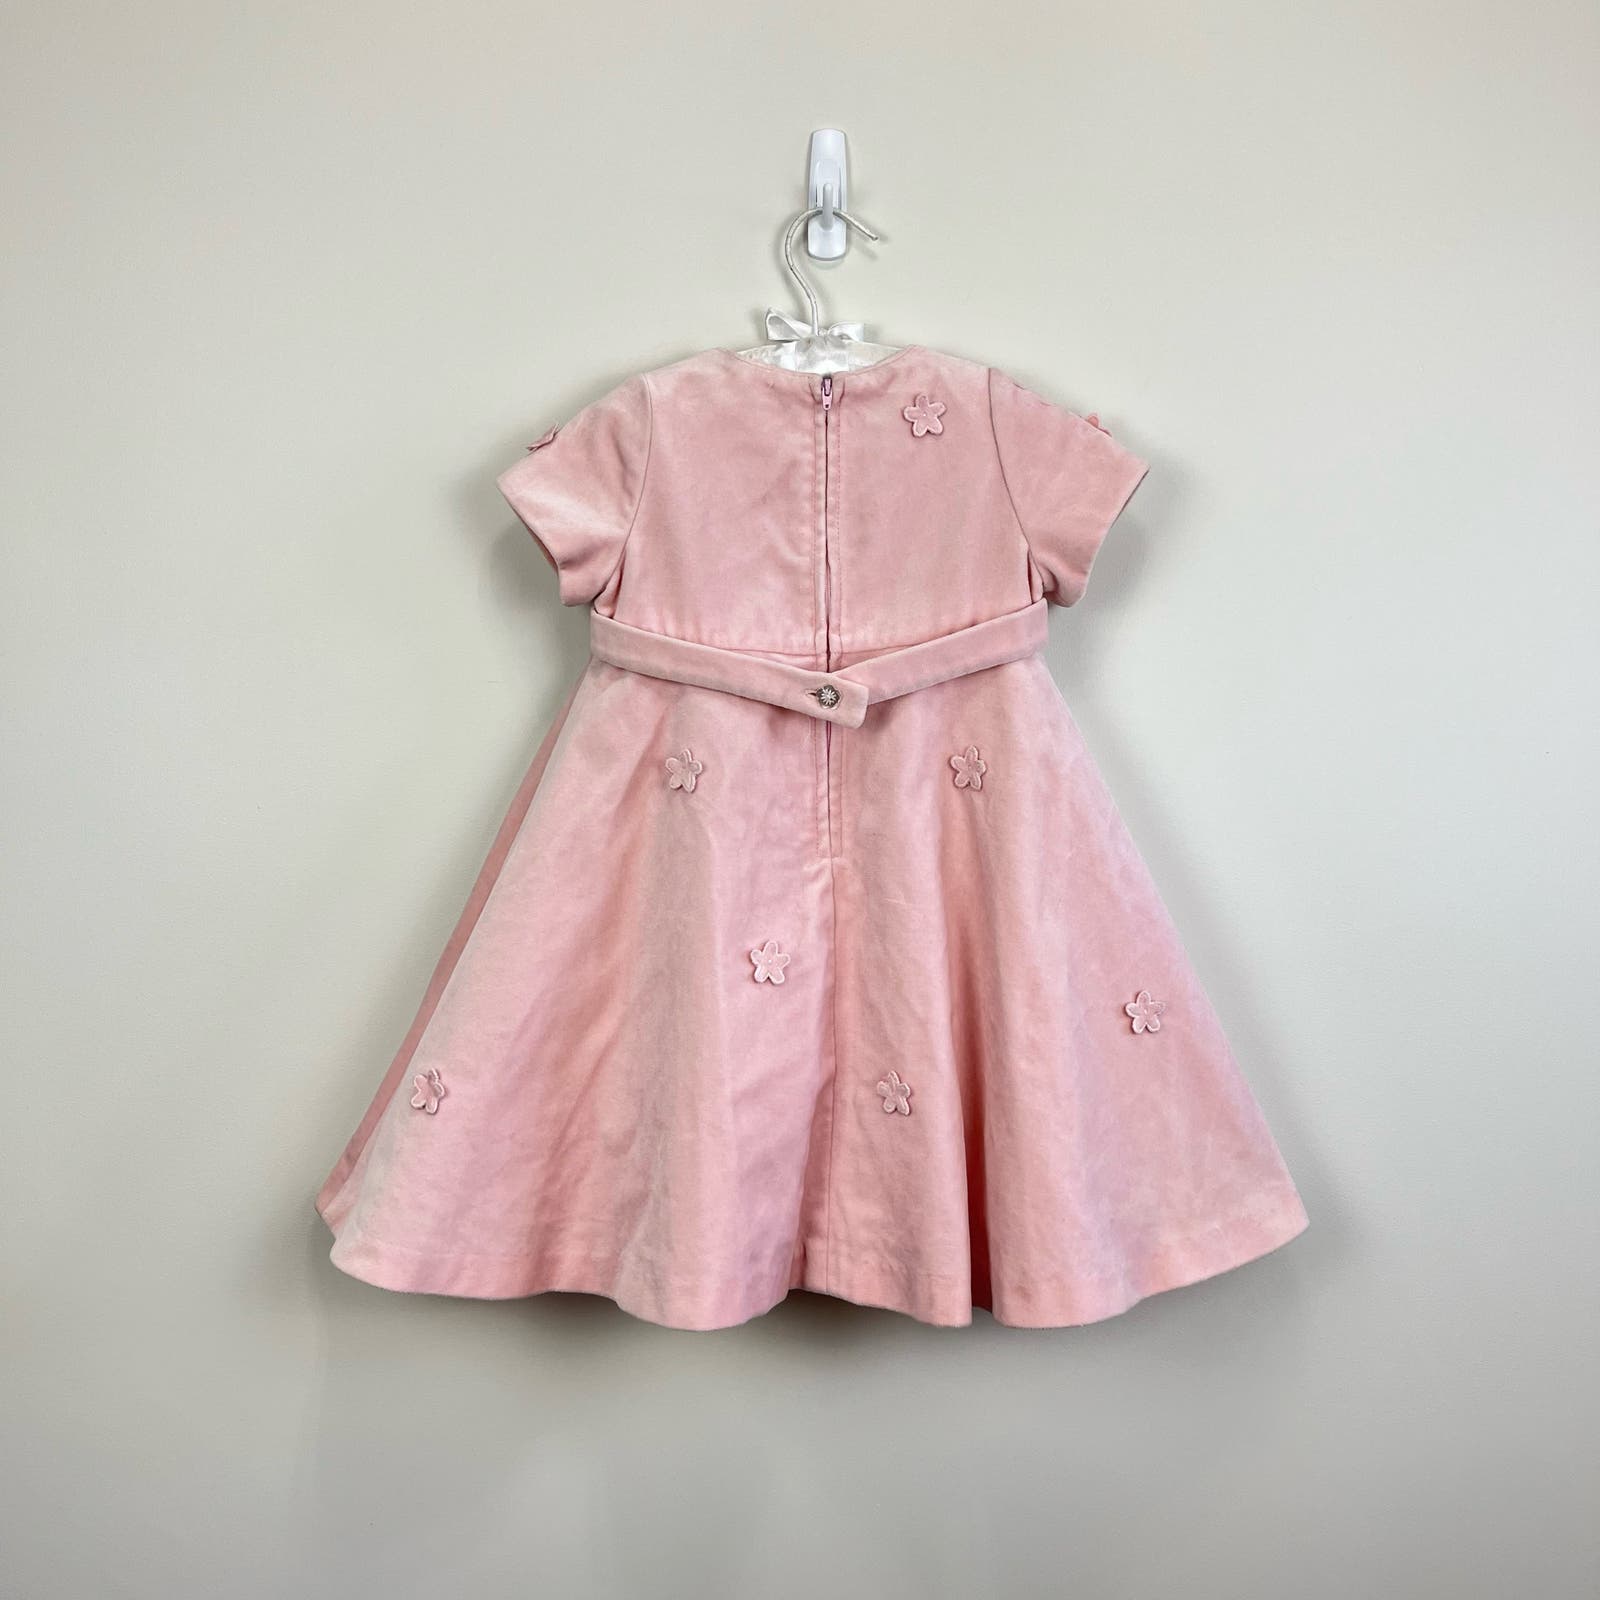 Florence Eiseman Girls Pink Velvet Flower Dress 3T